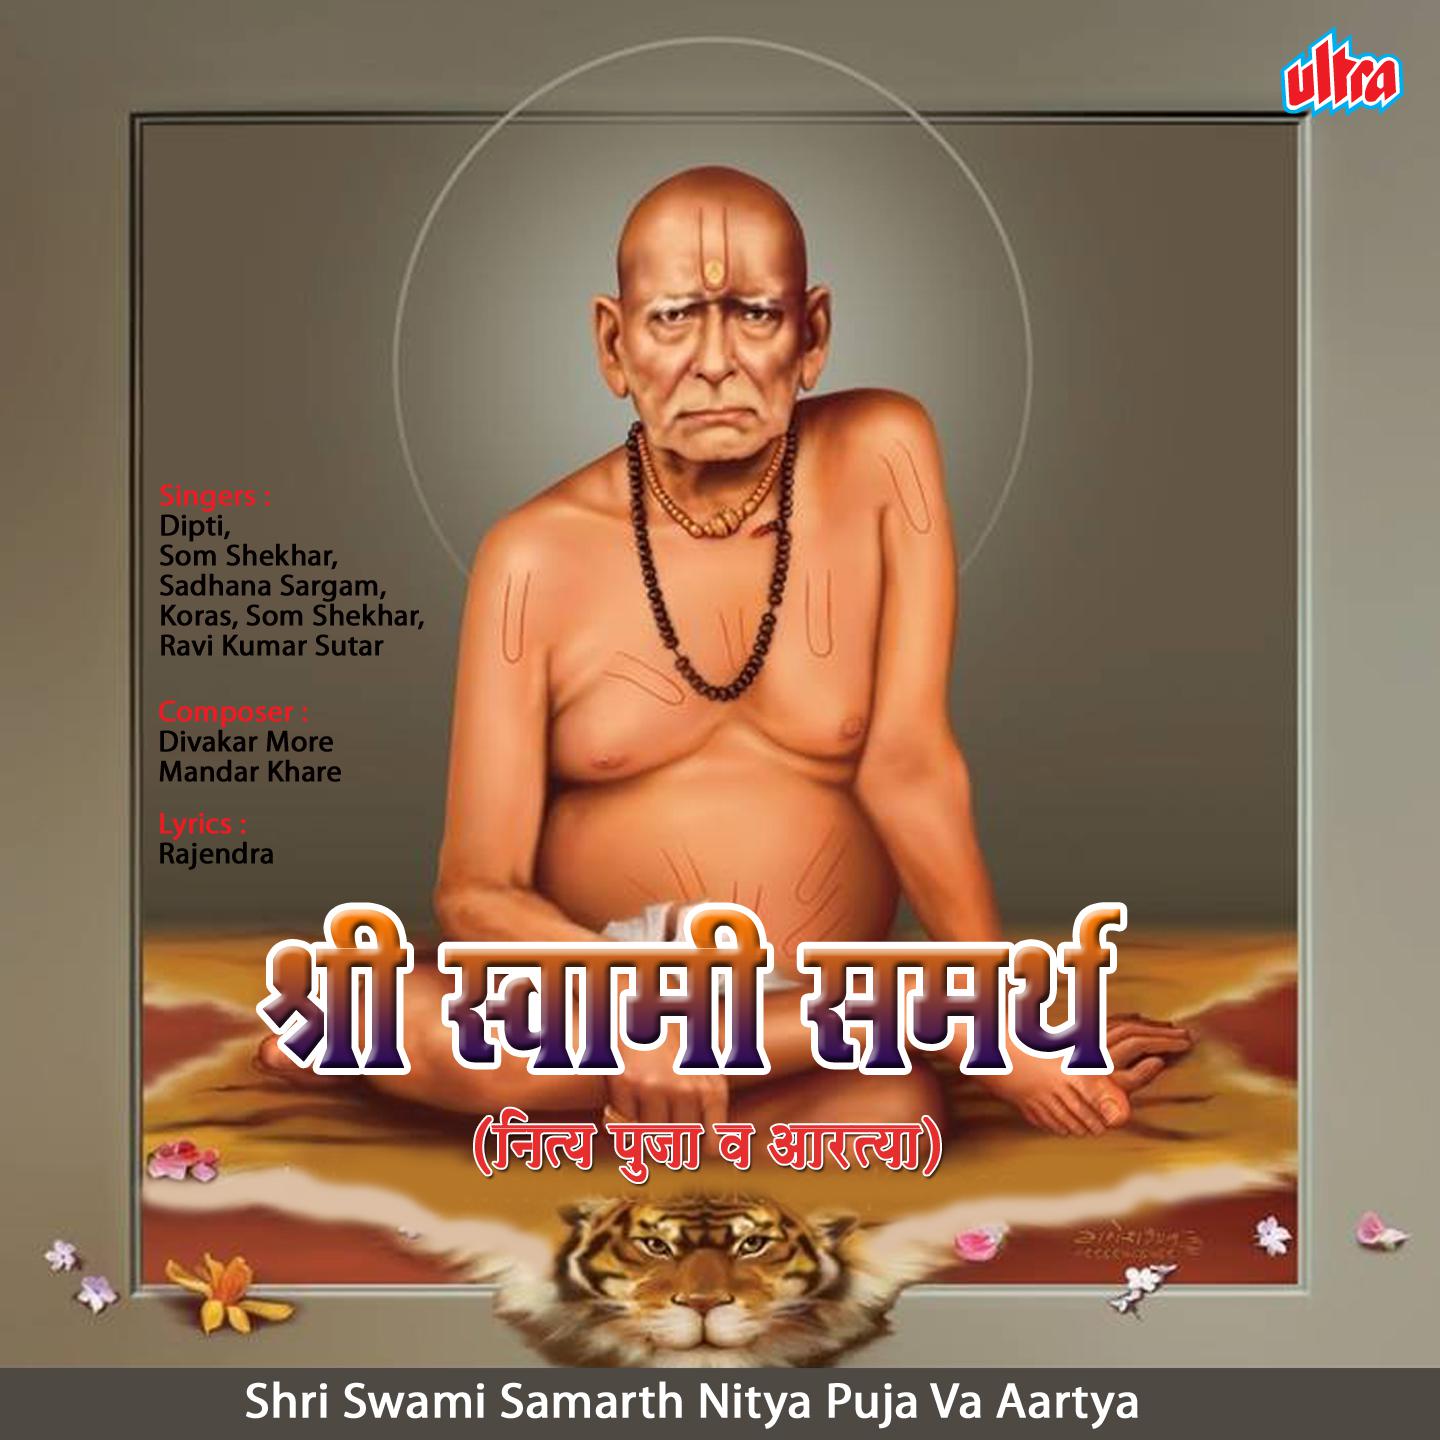 Shri Swami Samarth Nitya Puja Va Aartya